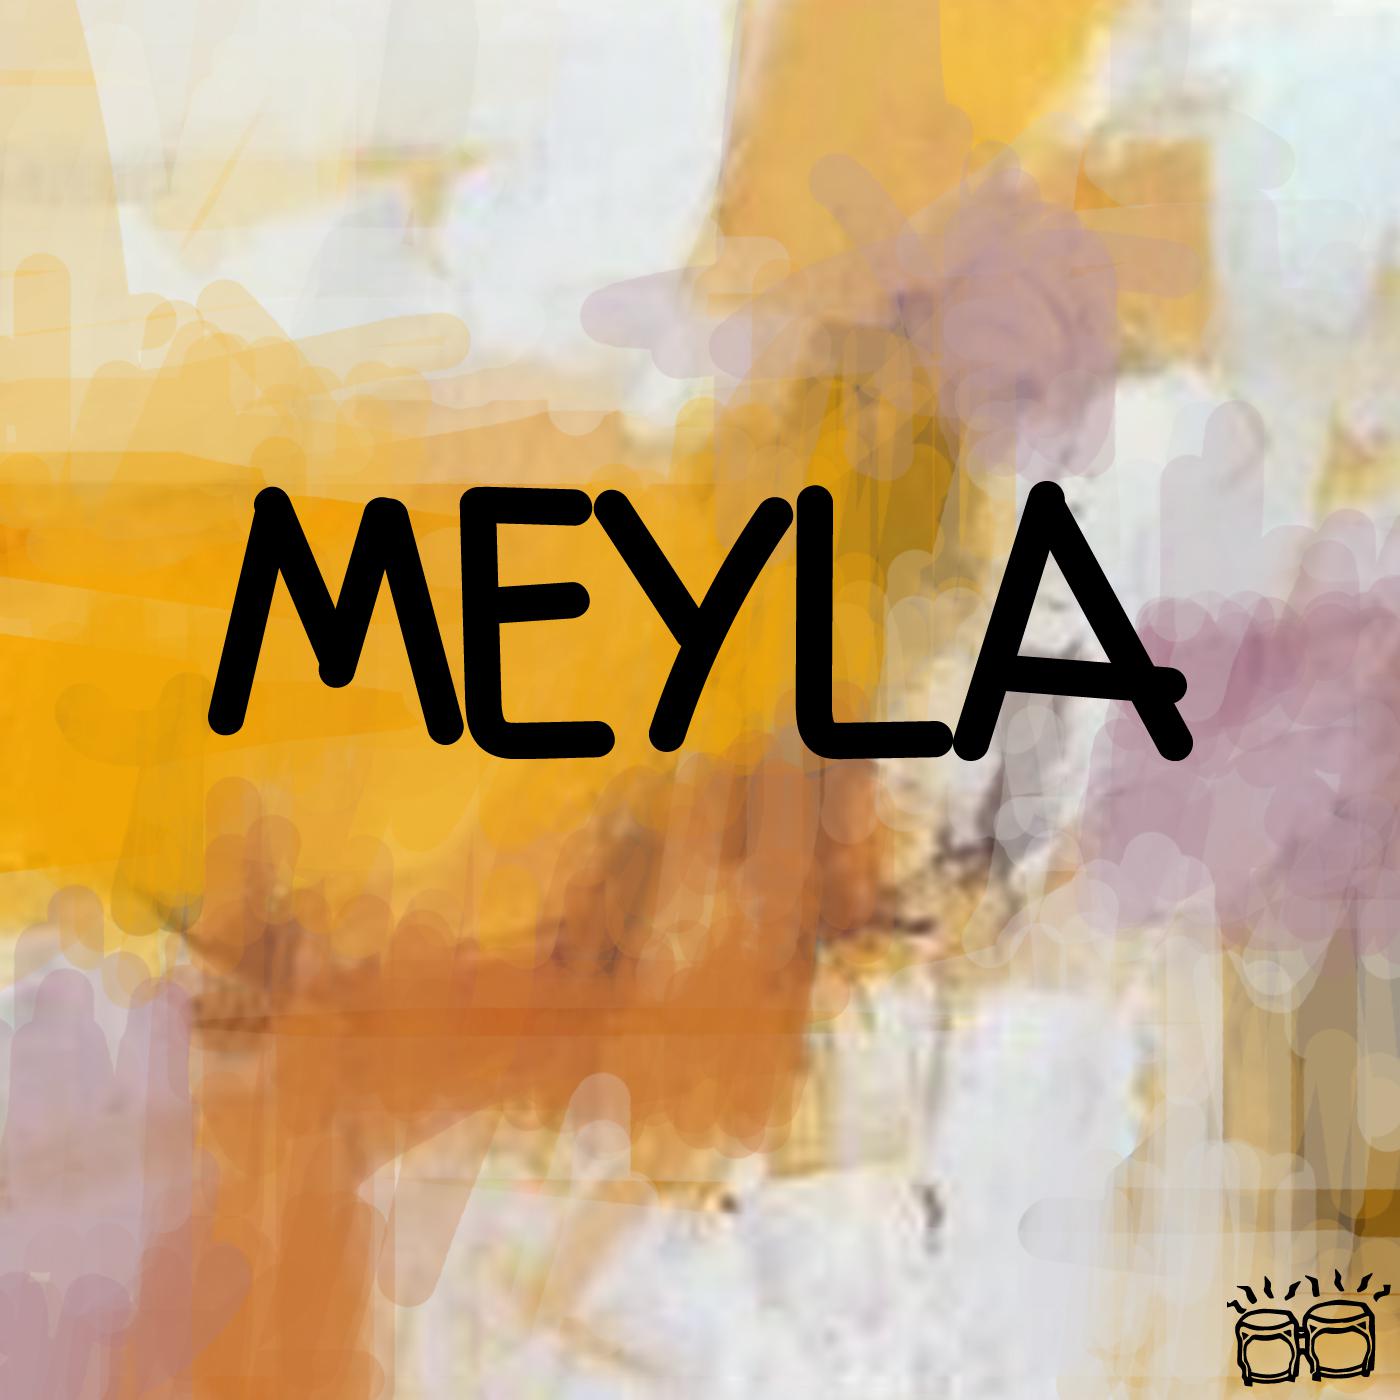 Jalal Ramdani - Meyla (Black Savana Remix)